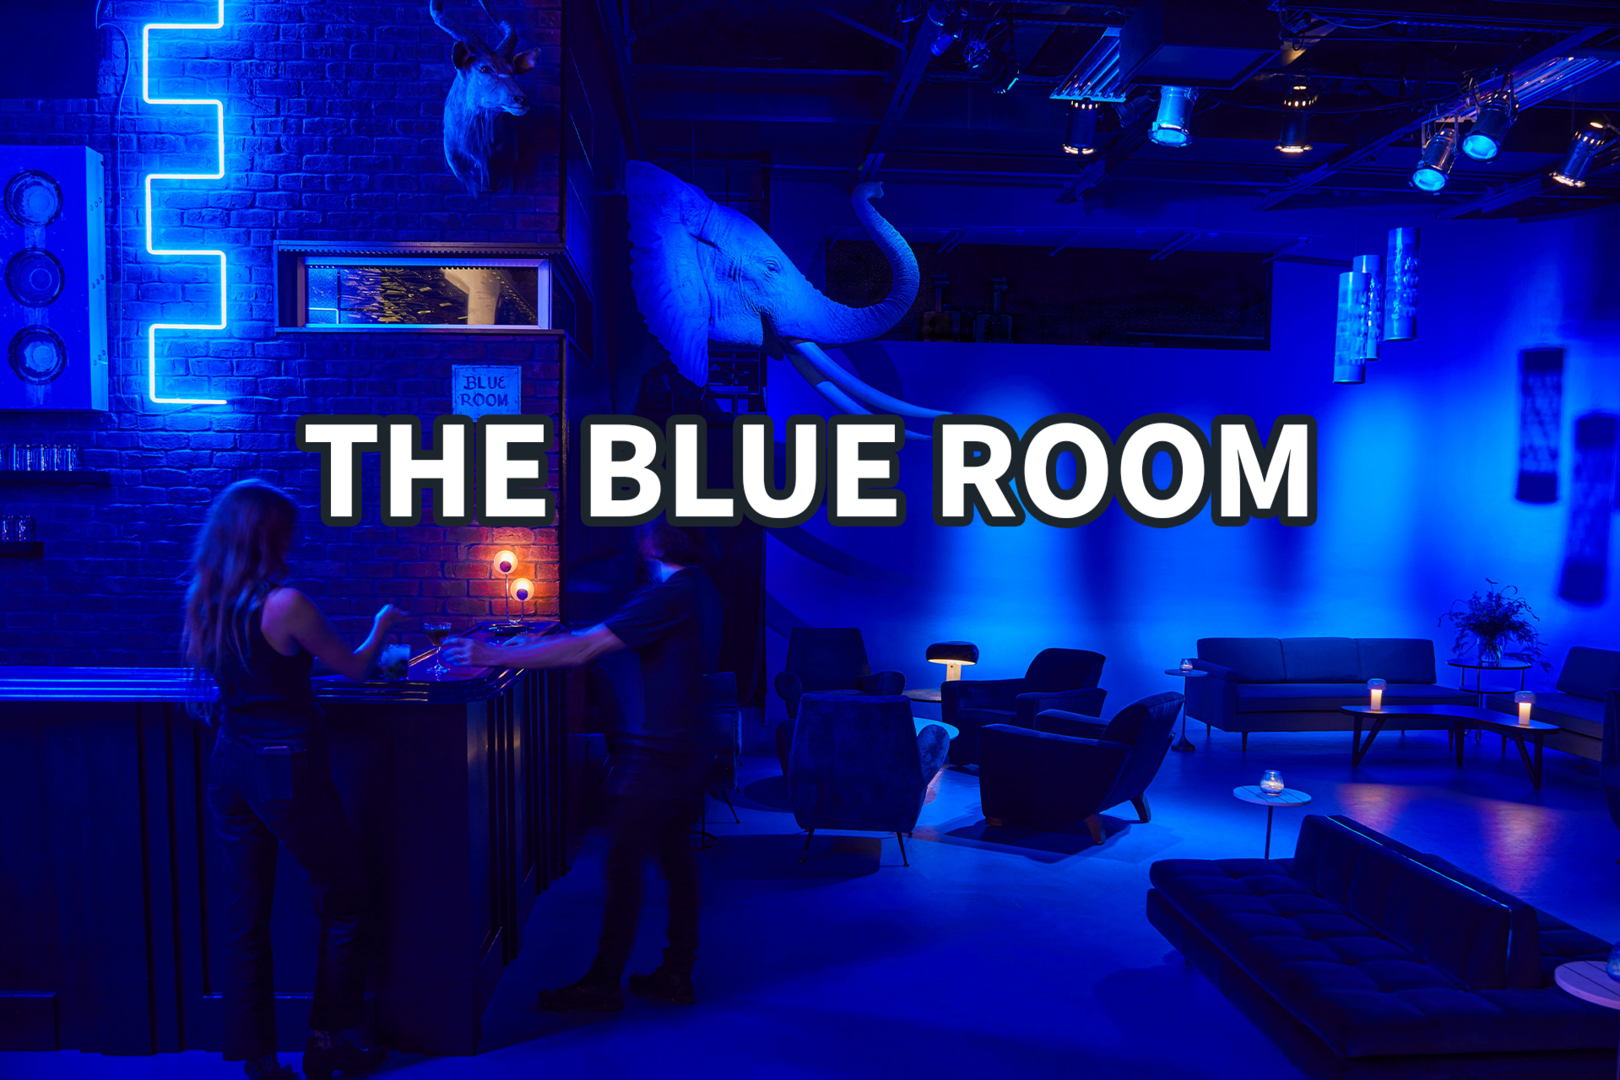 1 min walk: The Blue Room